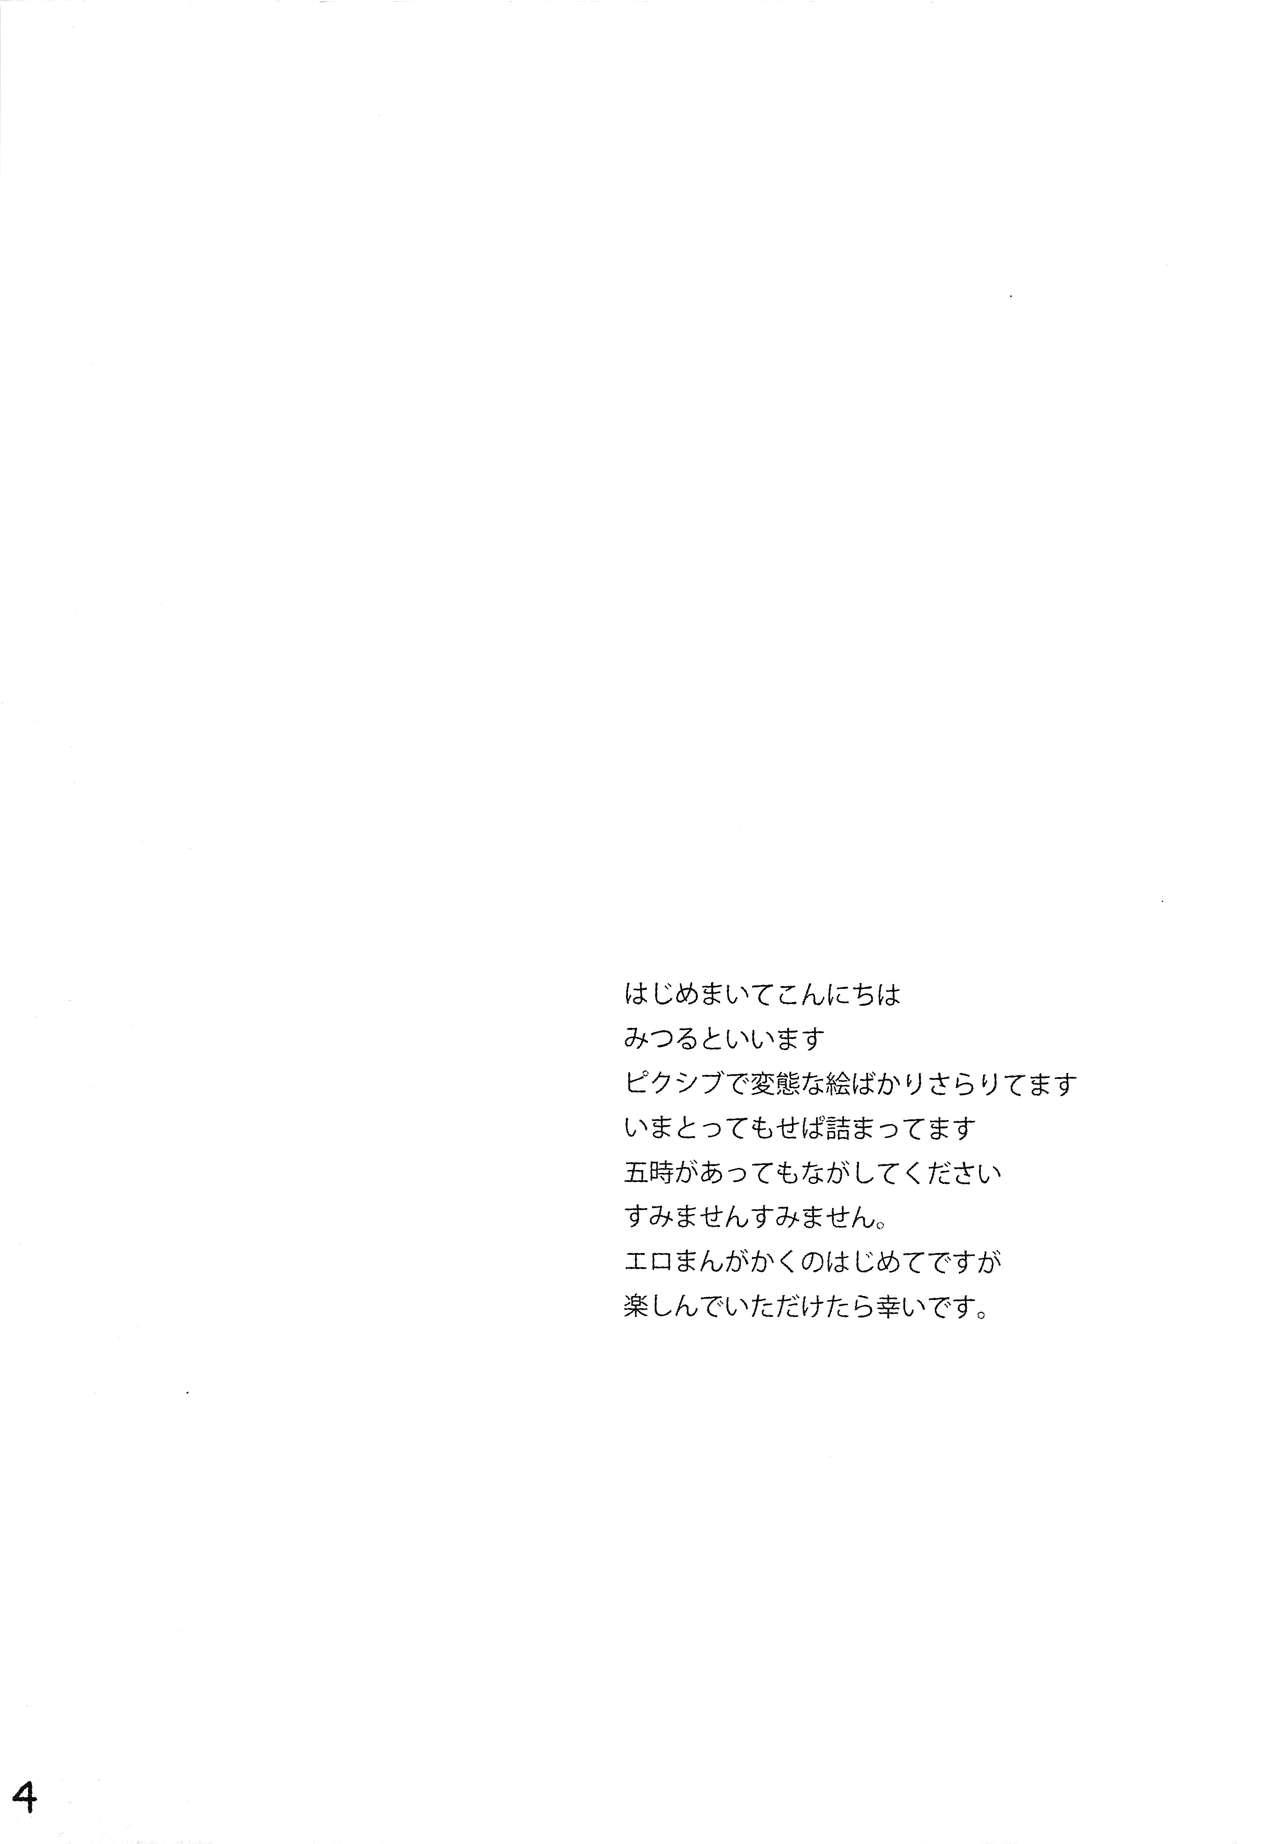 Transgender Hitoride dekirumon - Vocaloid Japanese - Page 5